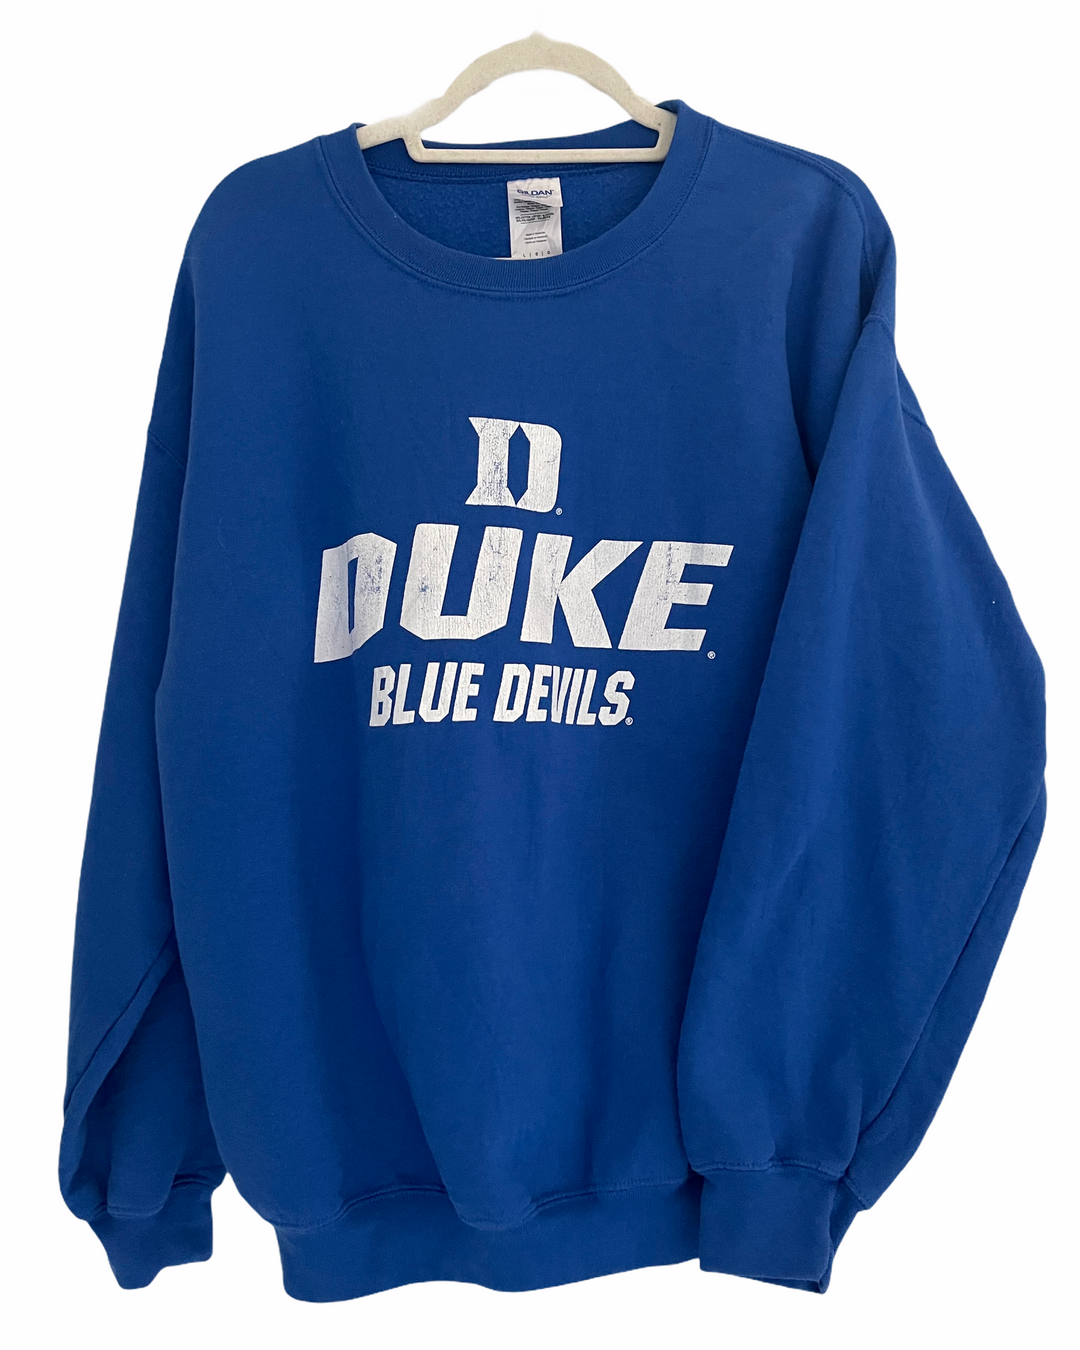 Duke Vintage Crewneck Sweatshirt – Roadie Couture